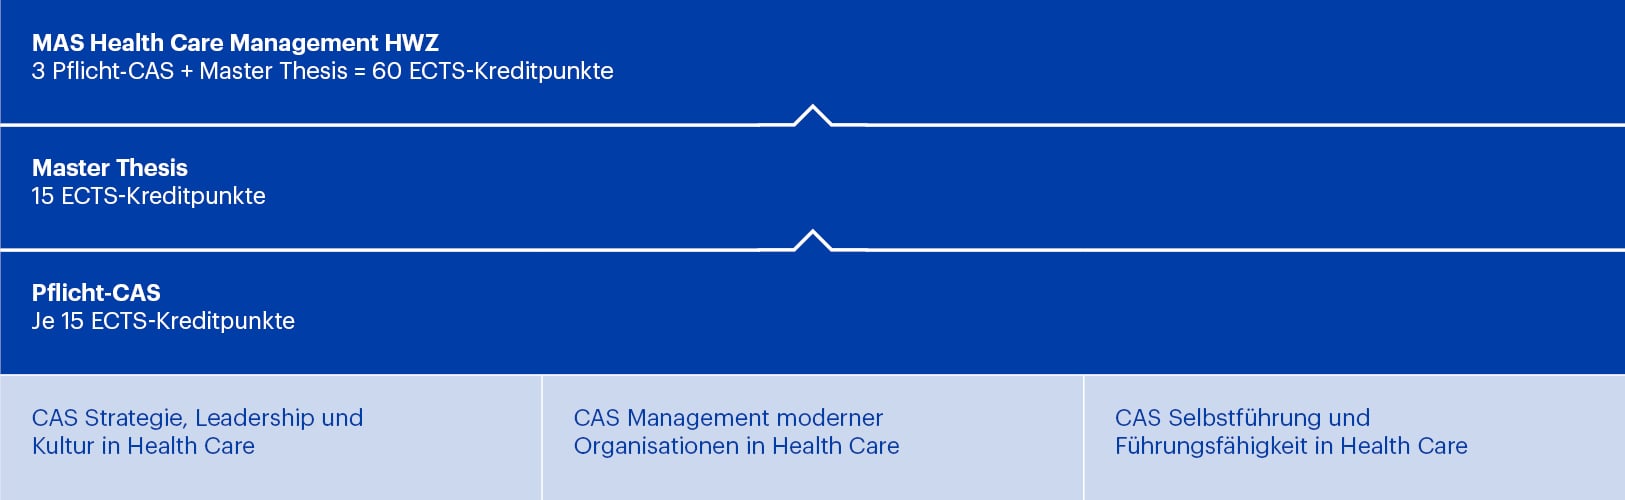 Modulaufbau MAS Health Care Management HWZ